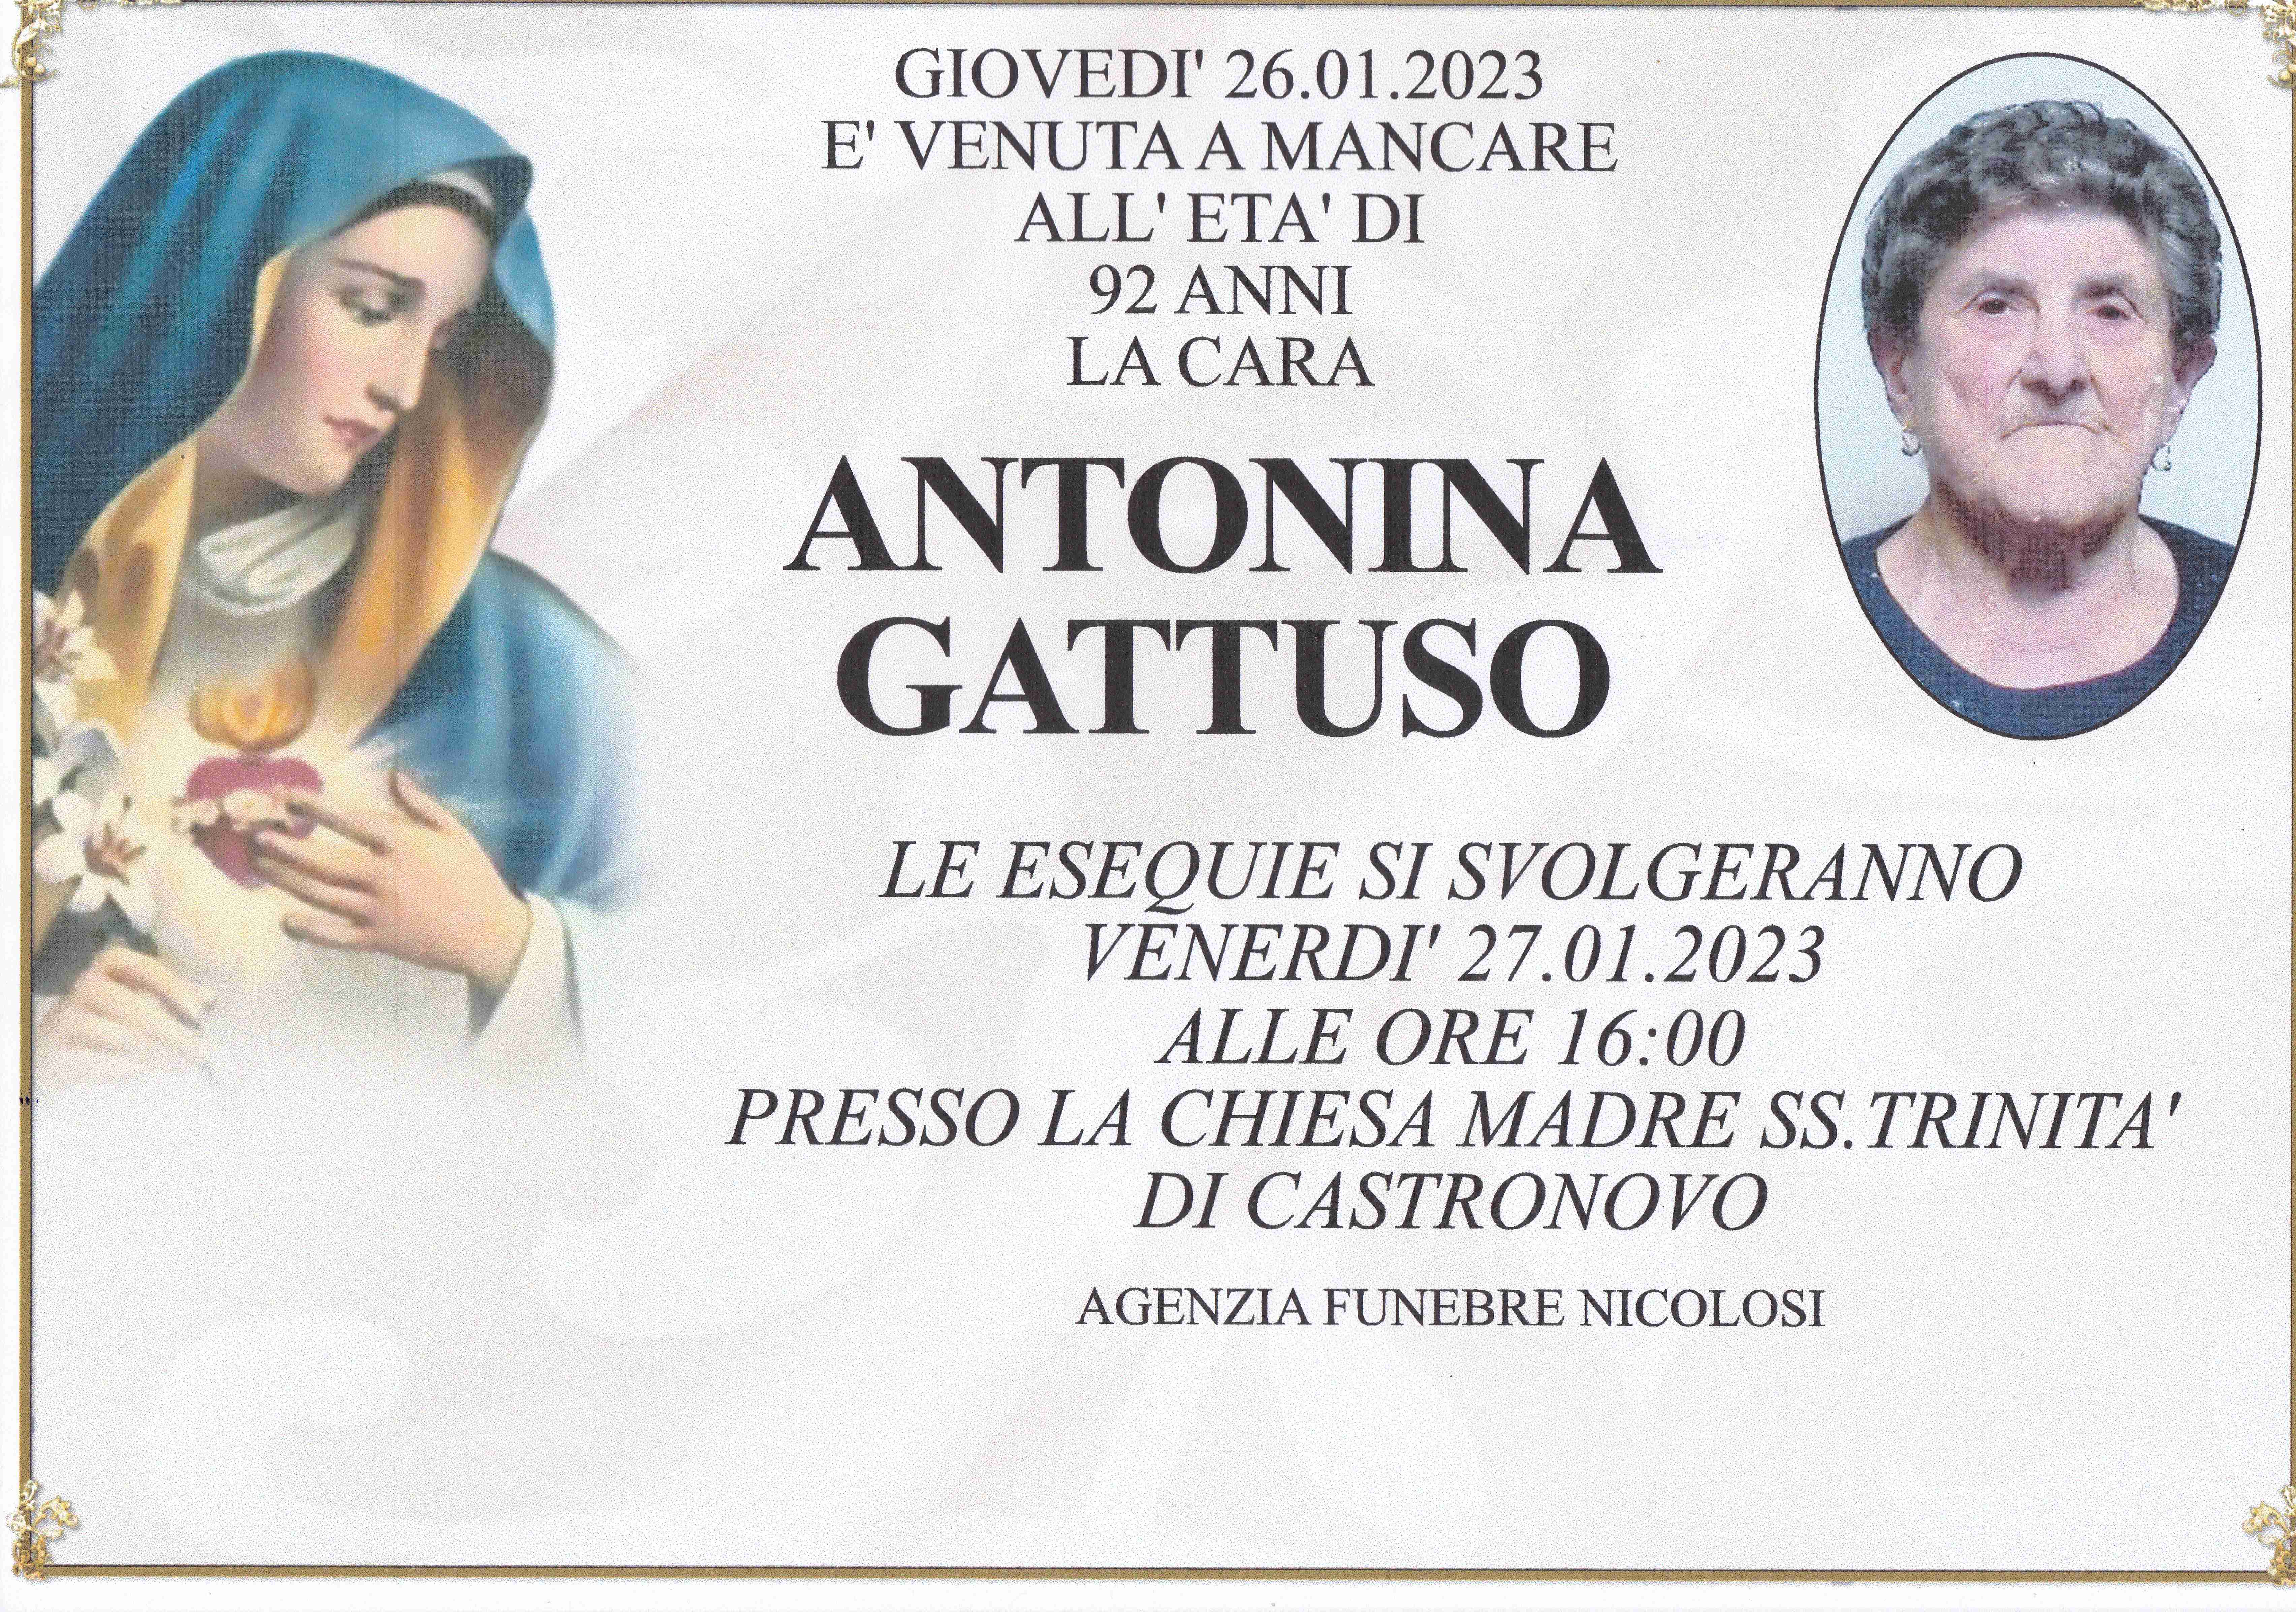 Antonina Gattuso